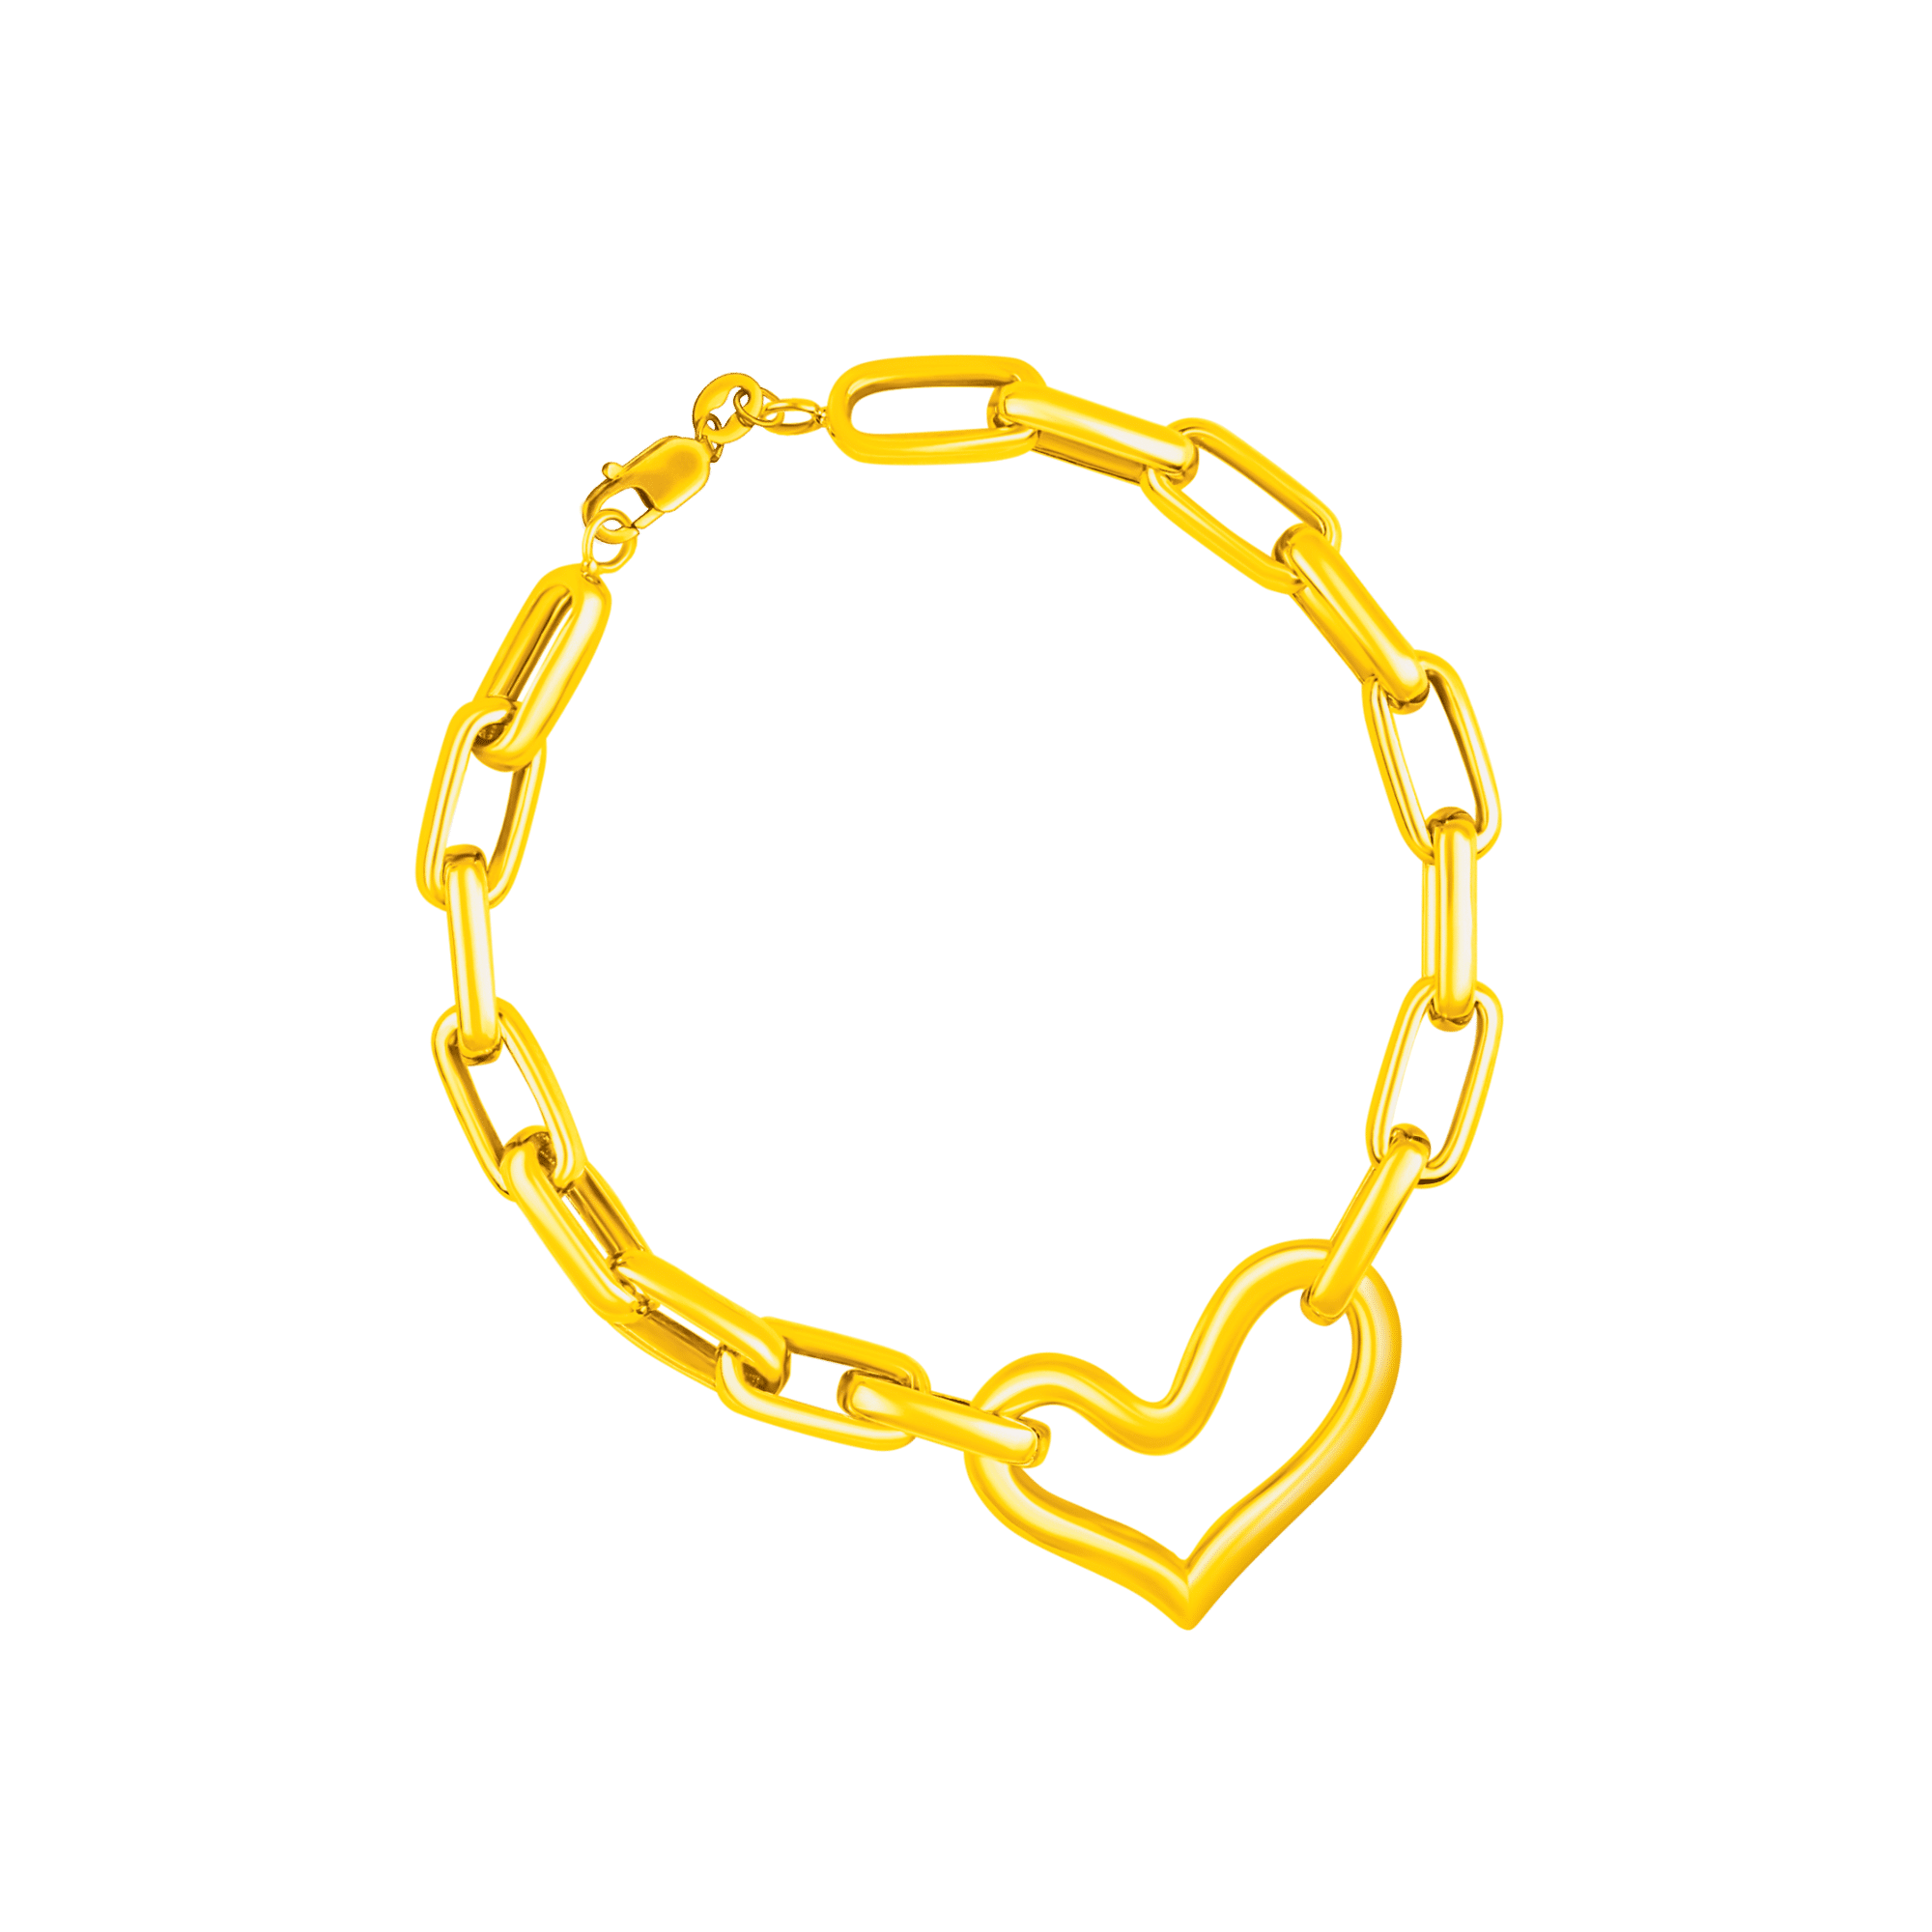 Heartlink Bracelet in 916 Gold